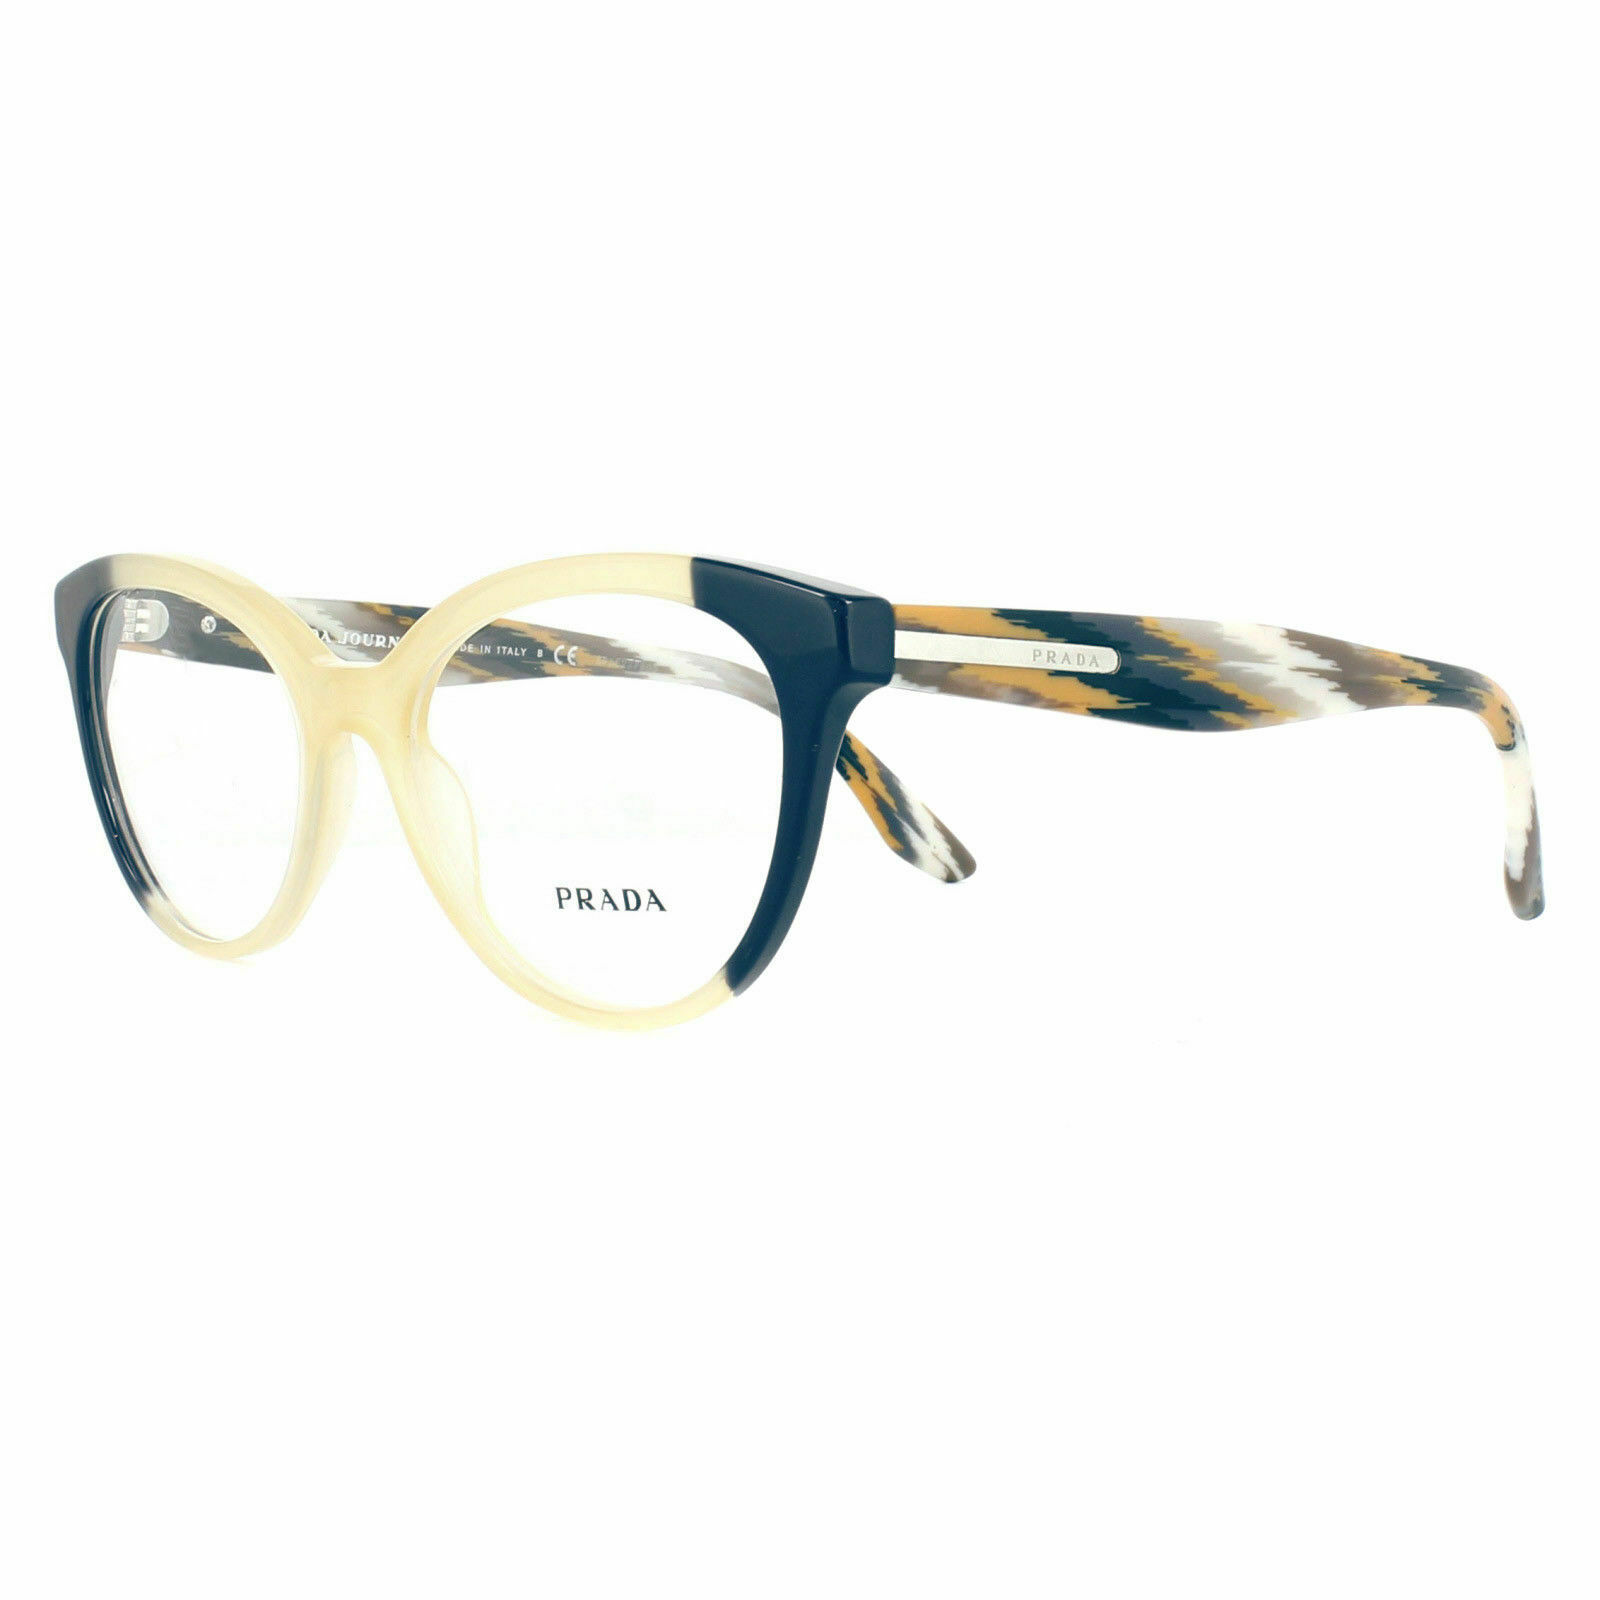 prada blue frame sunglasses